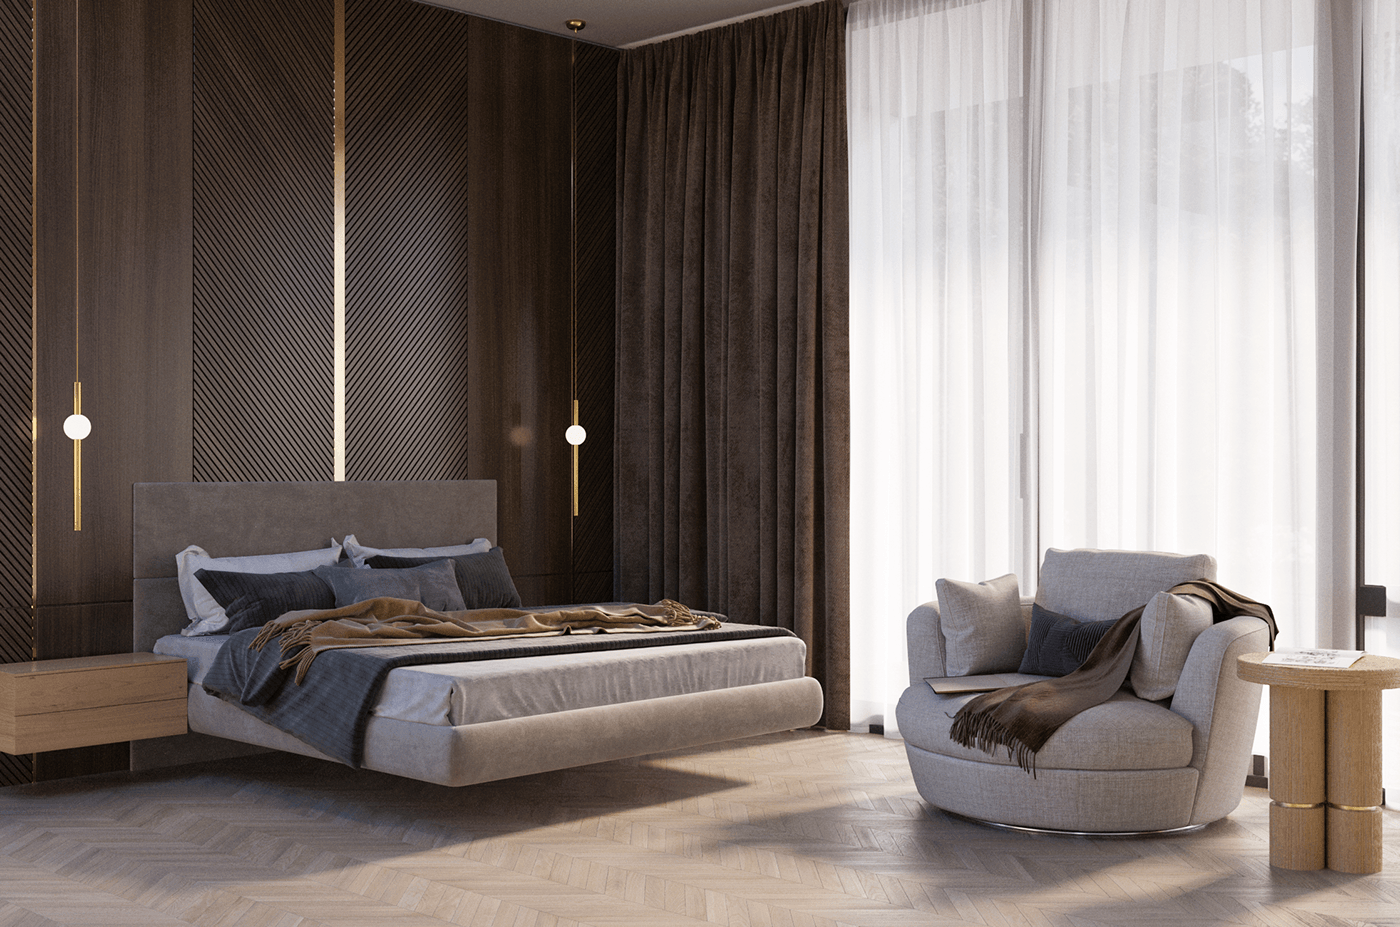 interior design  Interior design bedroom bedroom design corona Render 3ds max visualization architecture